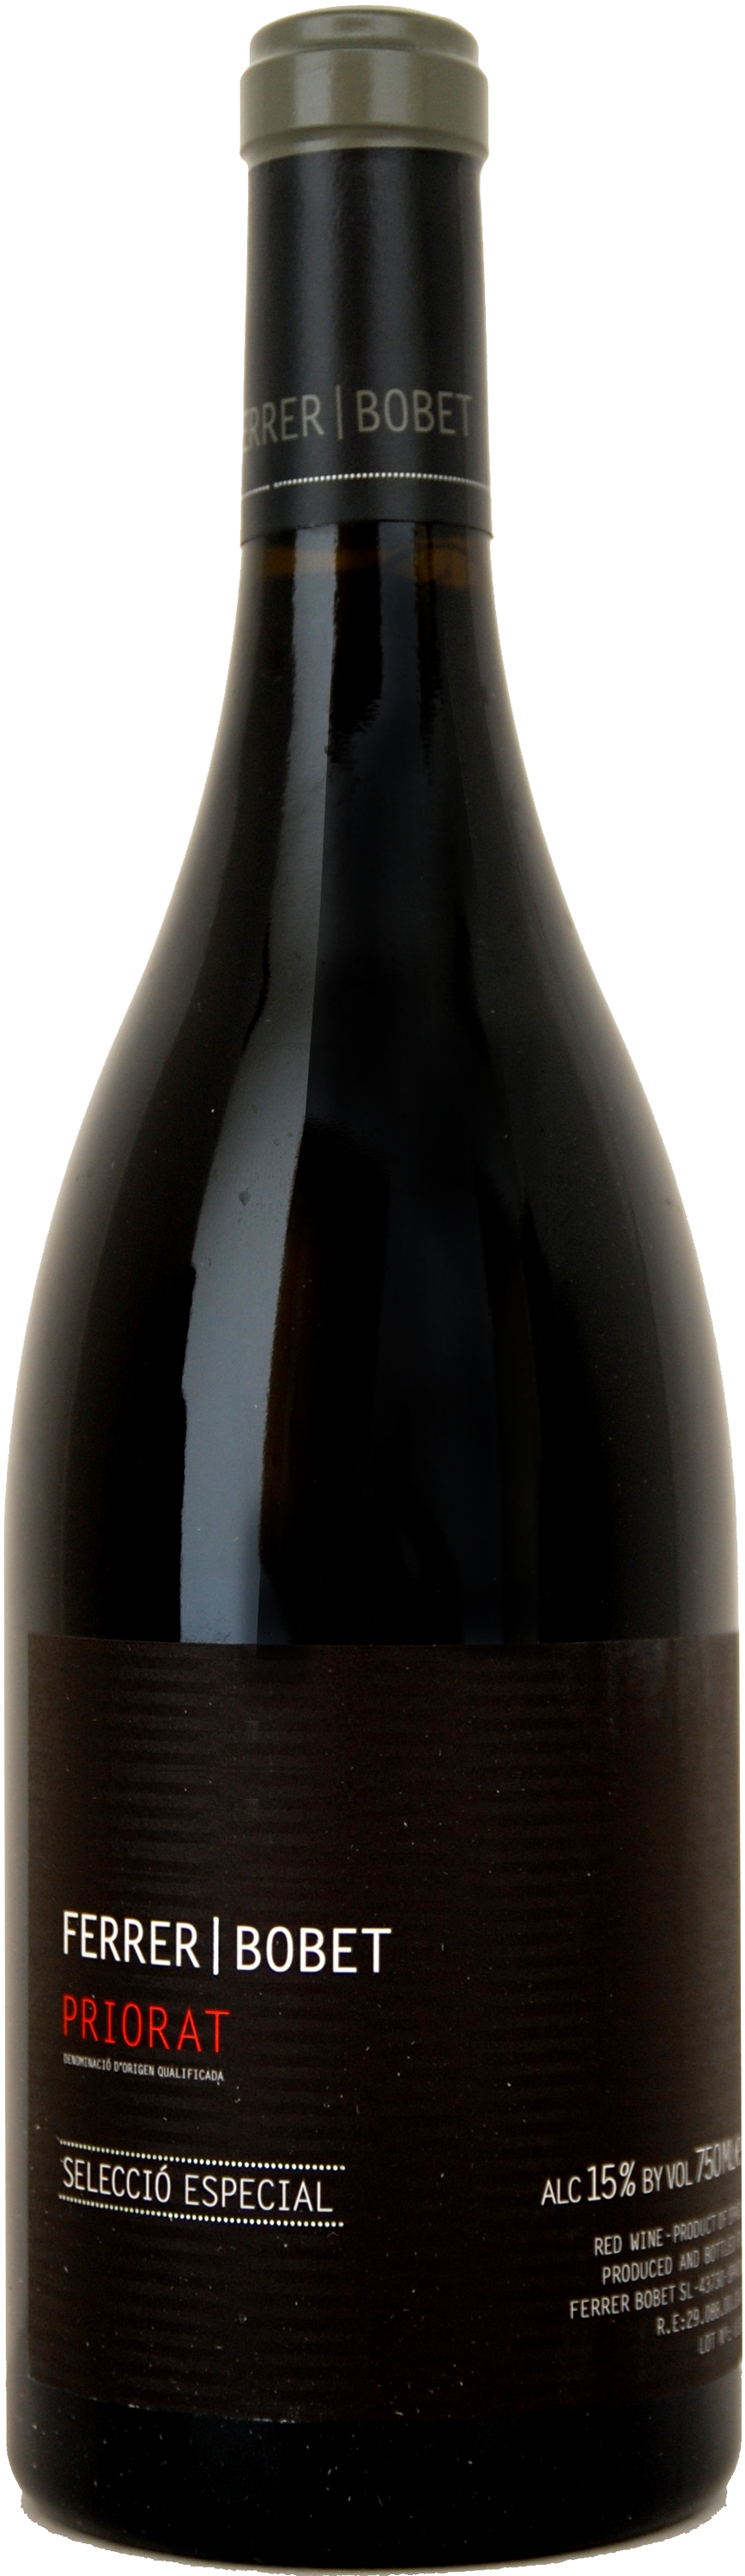 Bottle Background PNG